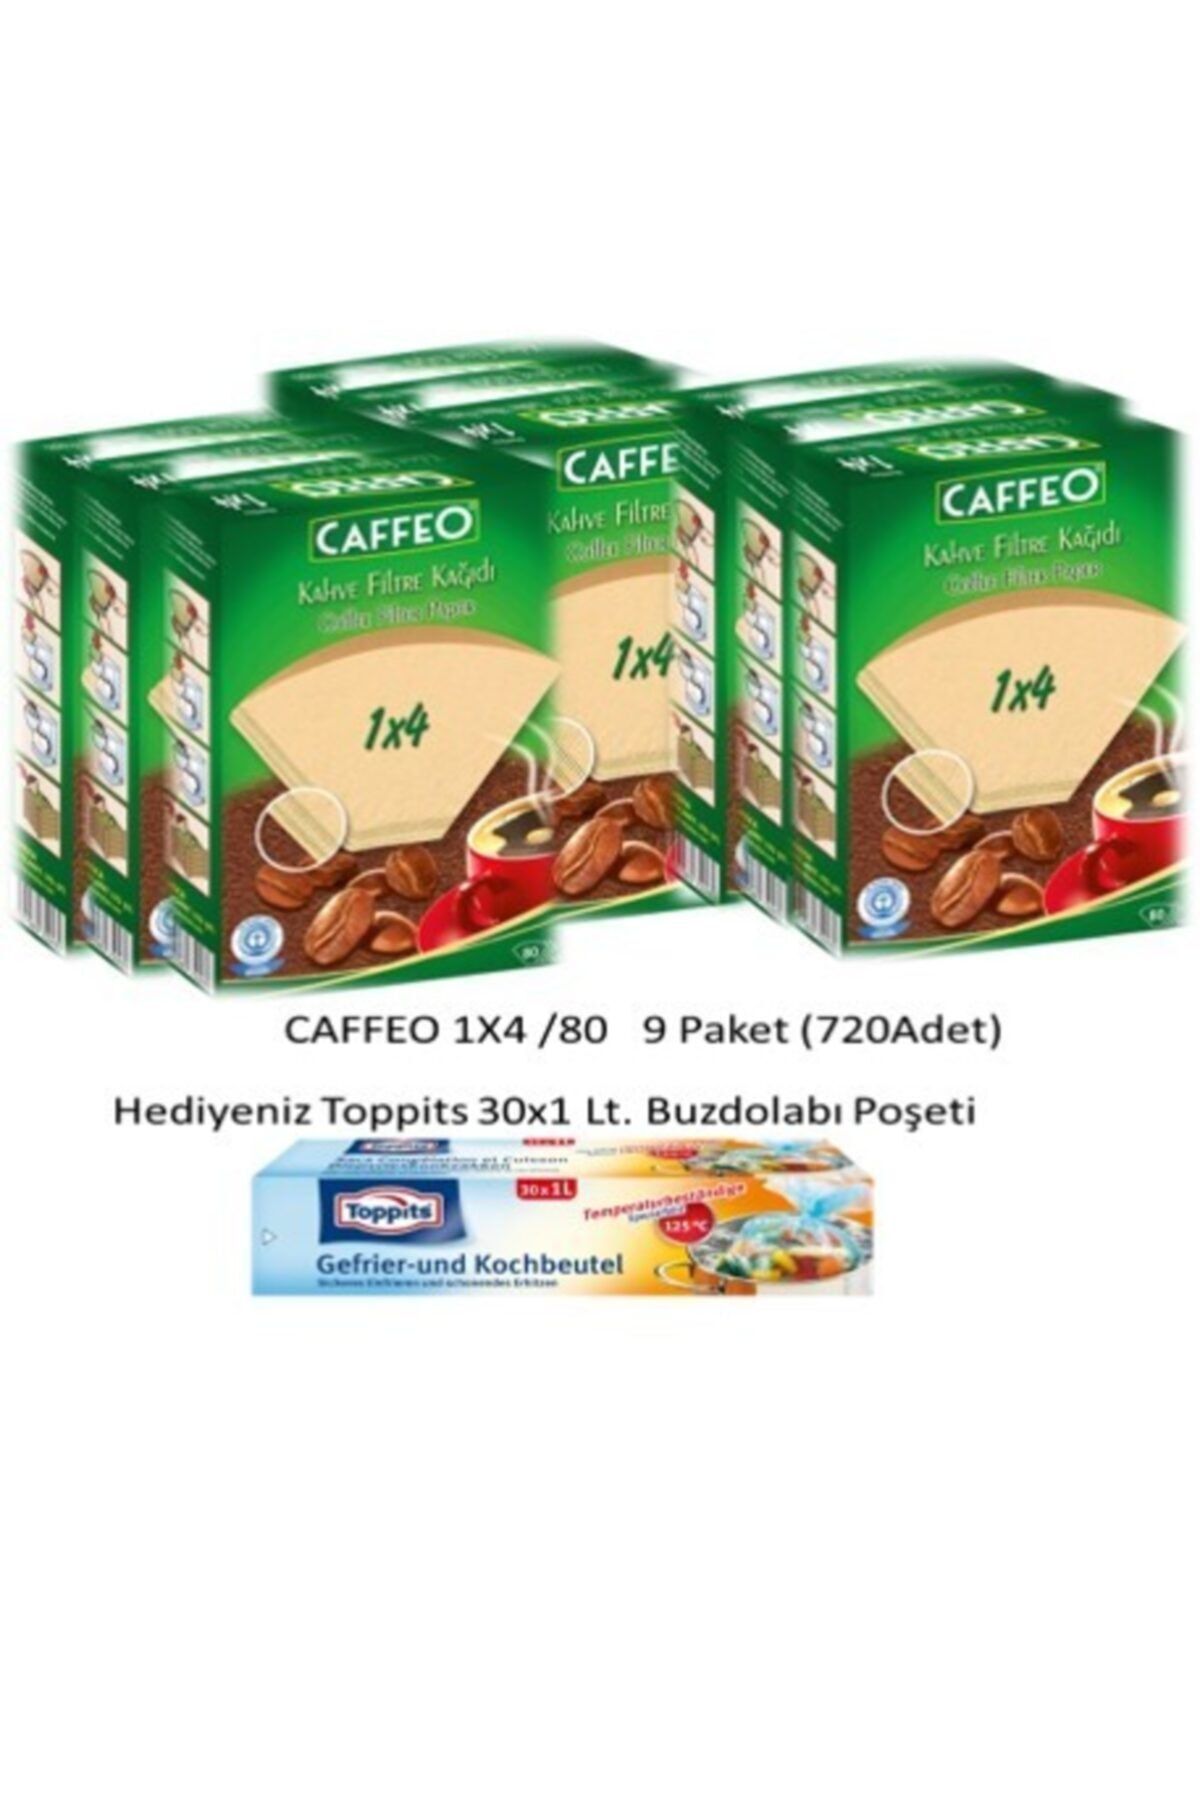 Caffeo 1x4/80 Kahve Filtresi-9 Paket(720adet)+buzdolabı Poşeti Hediyeli